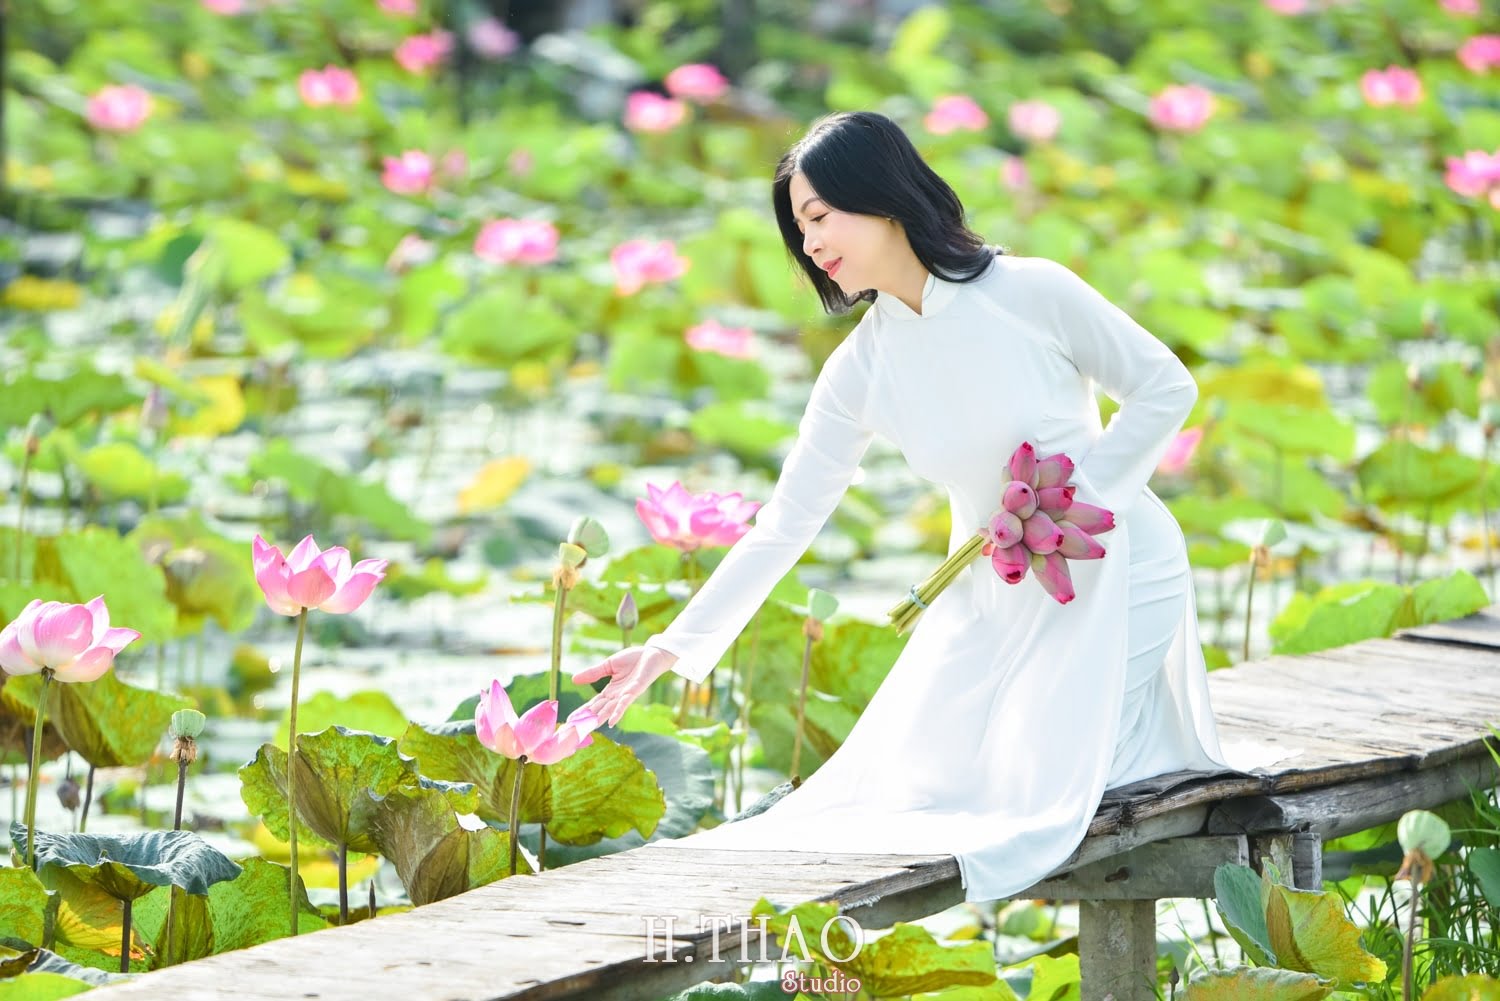 Anh Hoa sen 8 min - Tháng 6, chụp hình với hoa sen tại Tam đa quận 9 – Tp.HCM